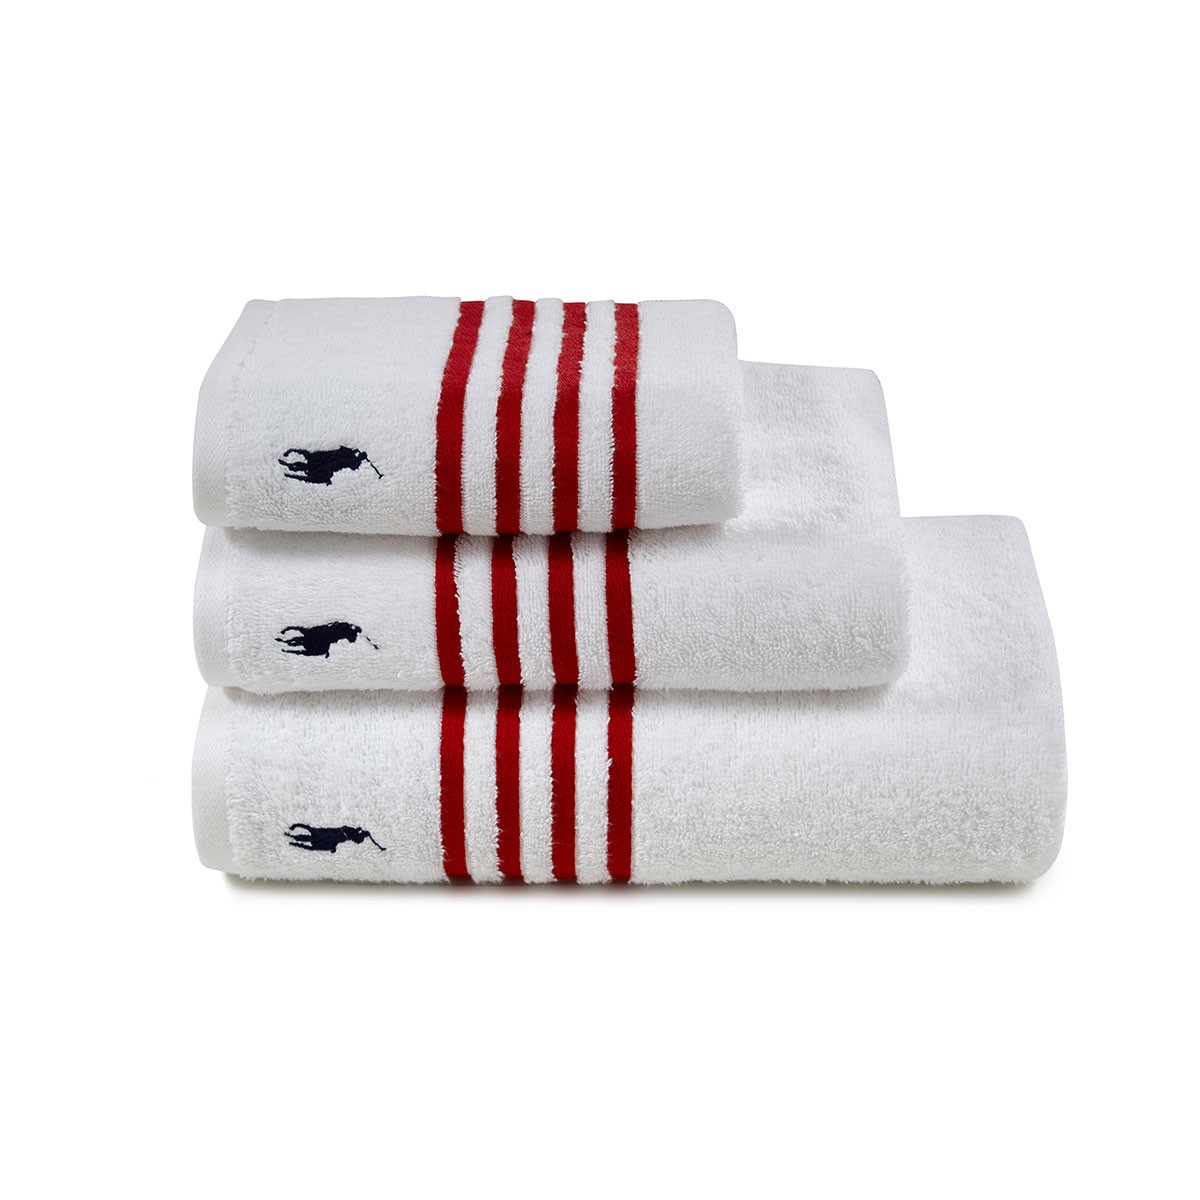 Ralph Lauren Polo Player Cotton Bath Towel - White Sands